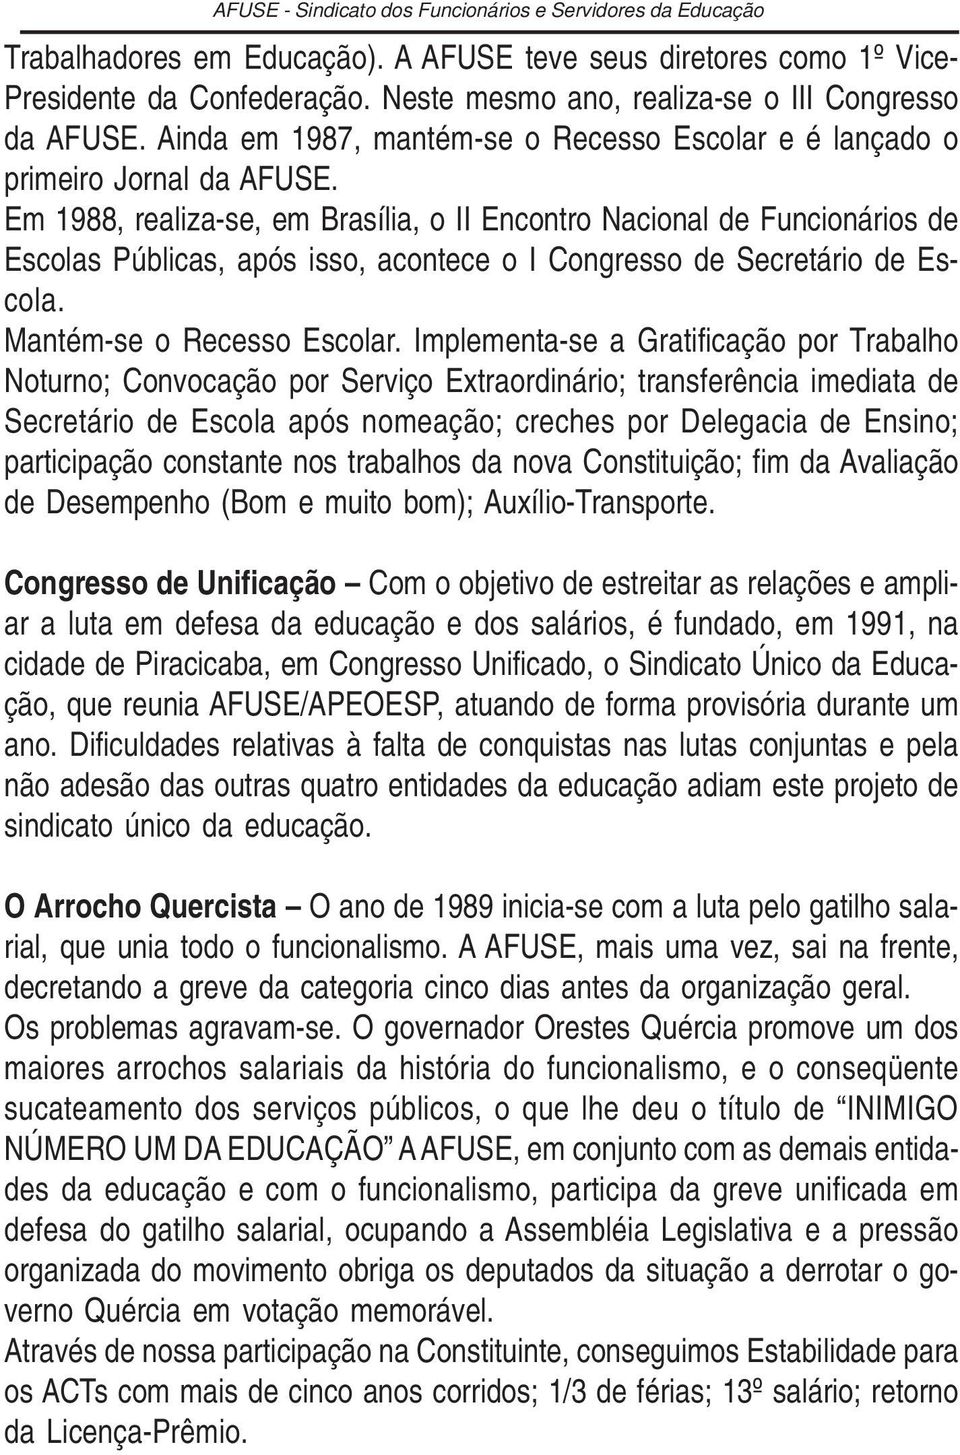 Em 1988, realiza-se, em Brasília, o II Encontro Nacional de Funcionários de Escolas Públicas, após isso, acontece o I Congresso de Secretário de Escola. Mantém-se o Recesso Escolar.